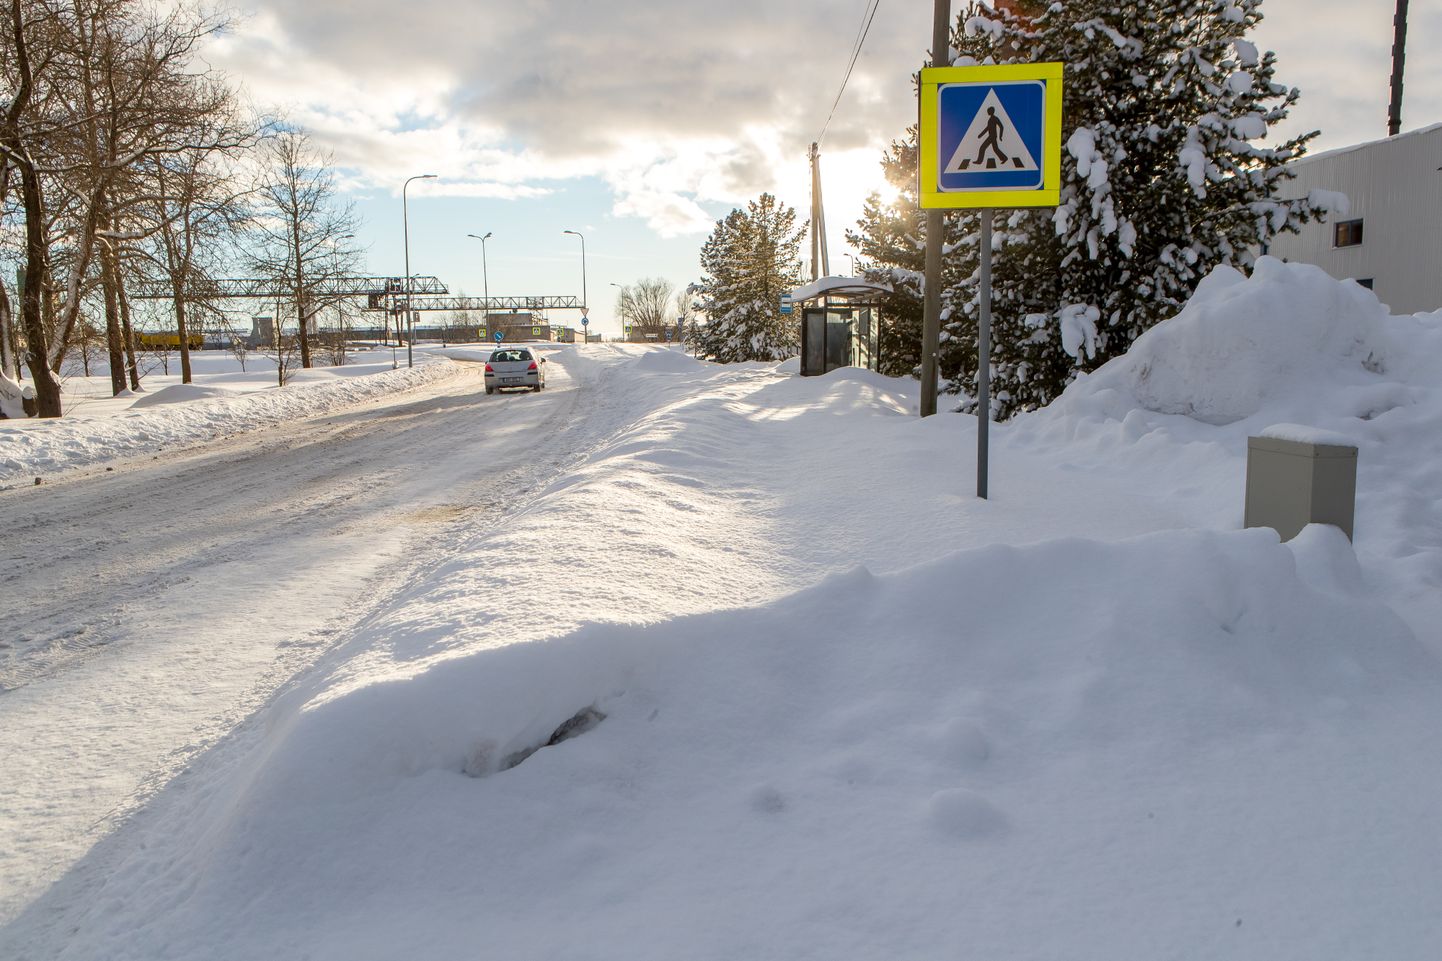 LUND ROHKEM KUI RUBLA EEST: Isegi eile õhtuks polnud lumetõrjujad jõudnud veel Pikale tänavale Saaremaa piimatööstuse juurde. Sadade inimeste töökoha ette oli tallatud vaid kitsuke jalgrada.